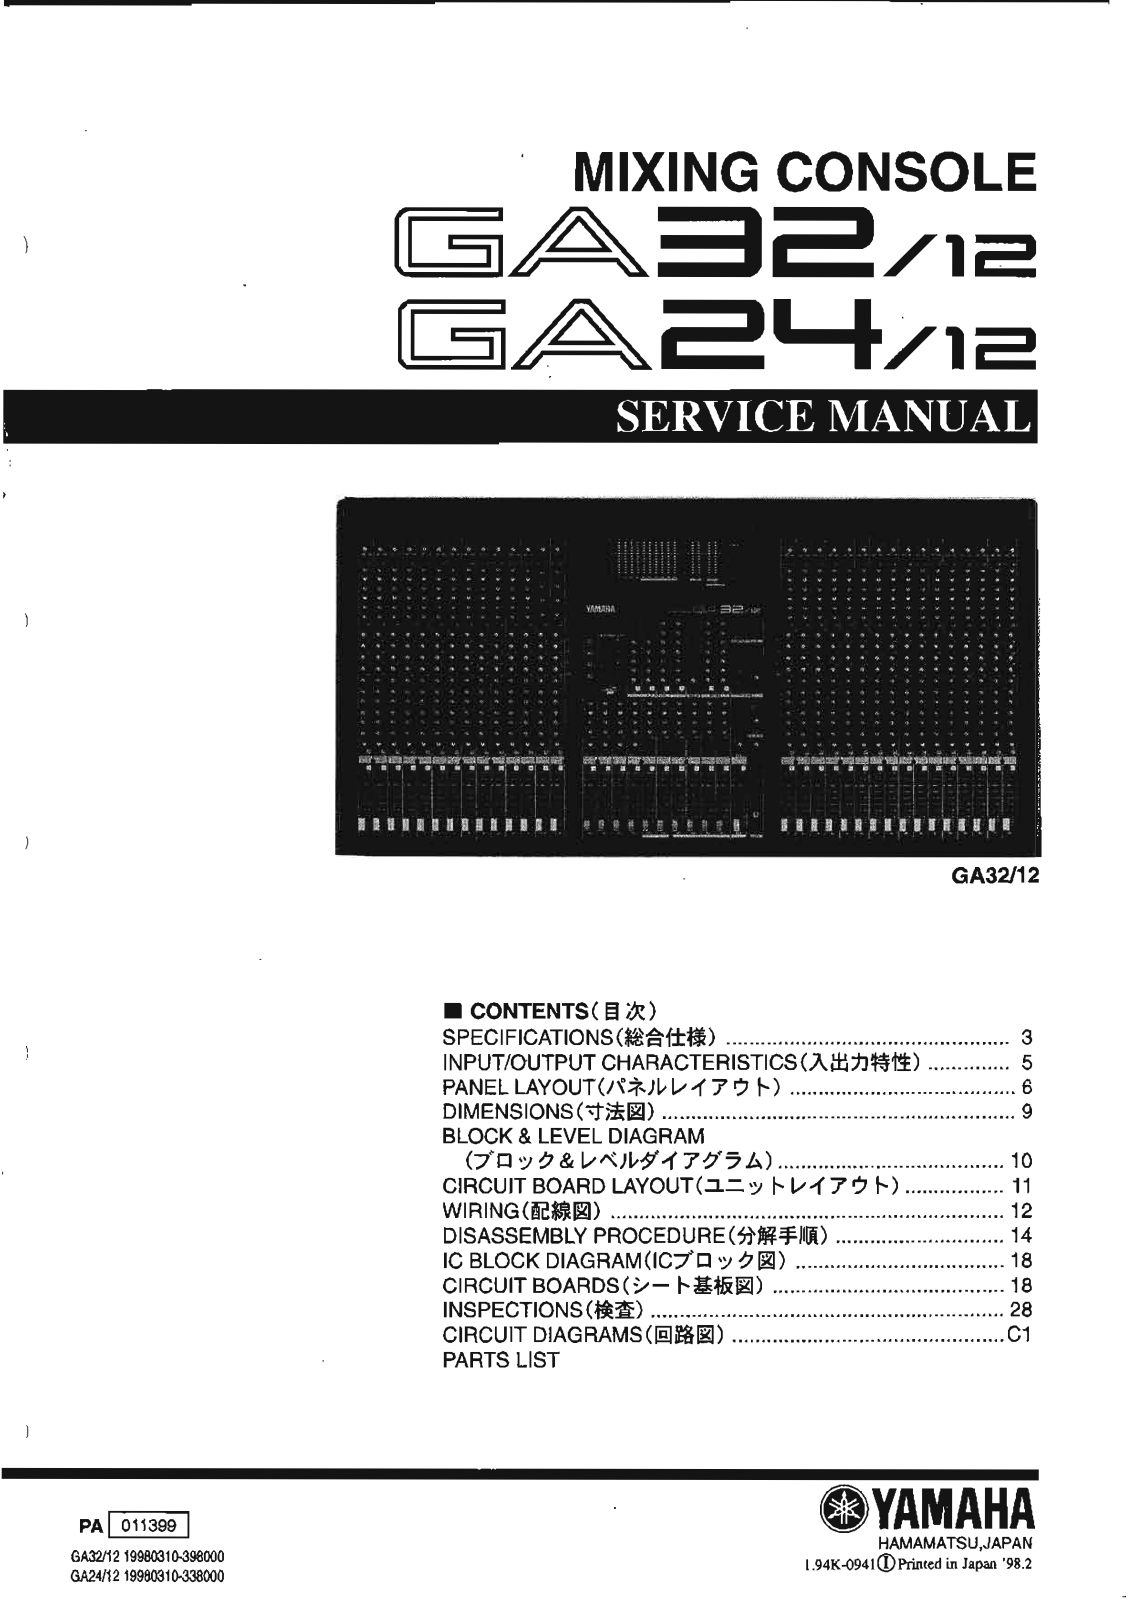 Yamaha GA-32, GA-24 Service Manual